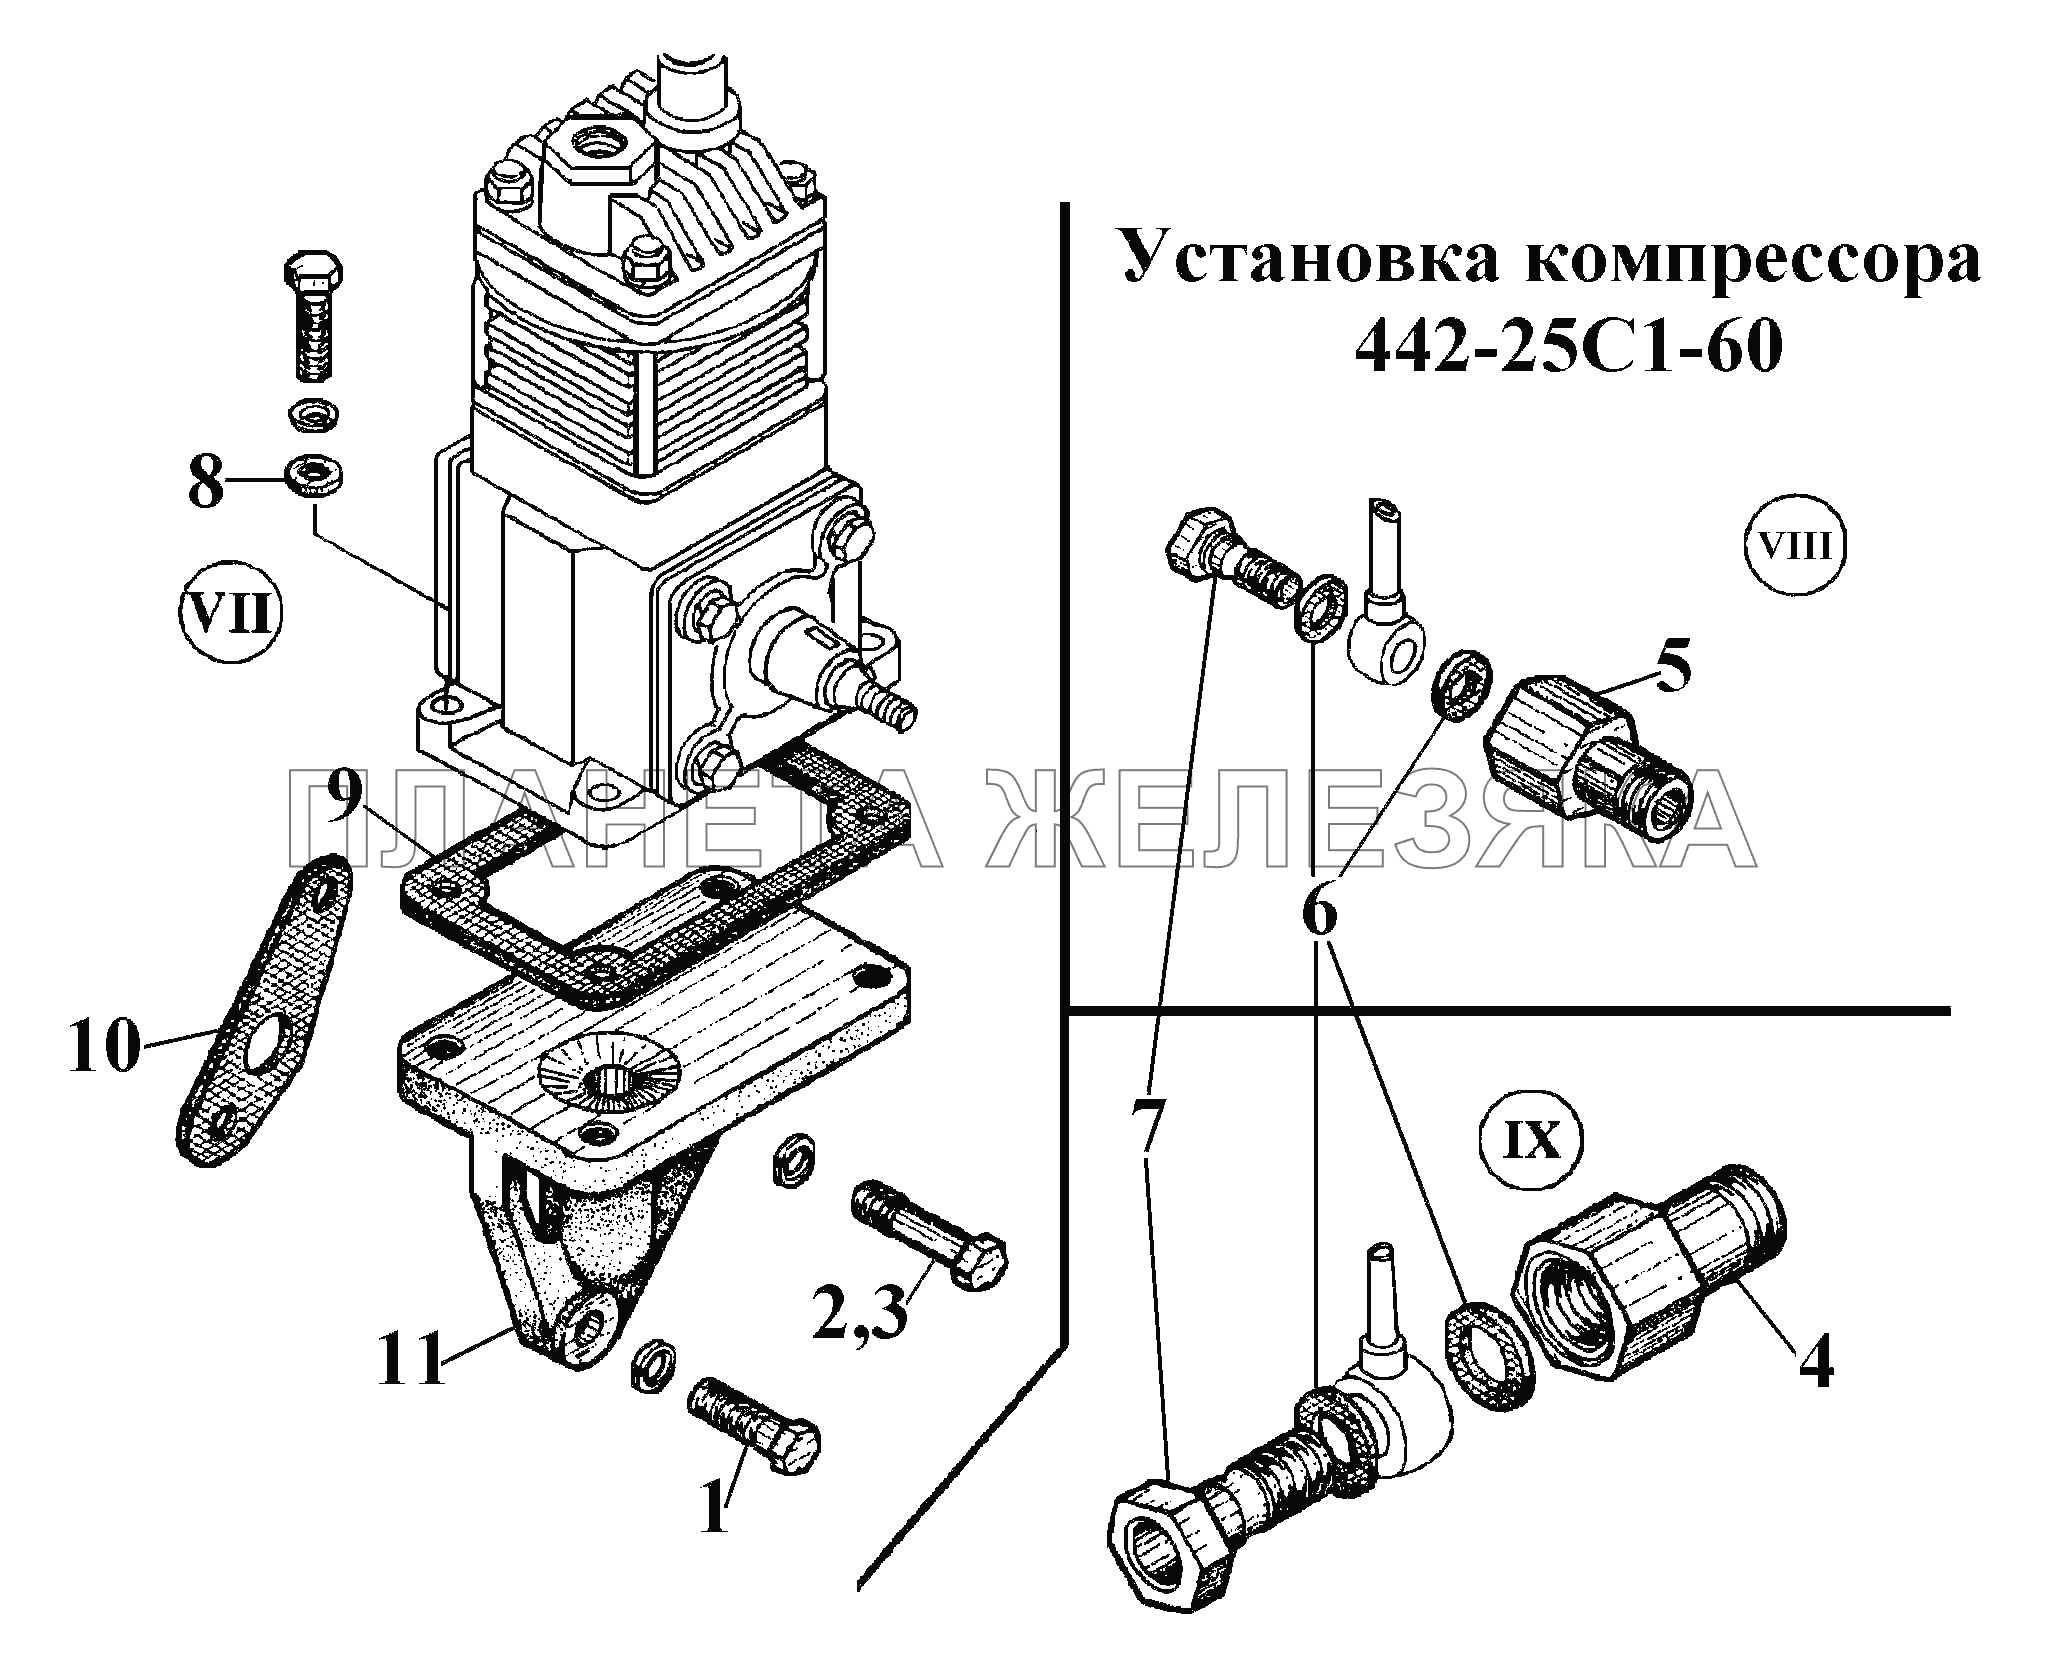 Установка компрессора  442-25С1-60 (2) ВТ-100Д